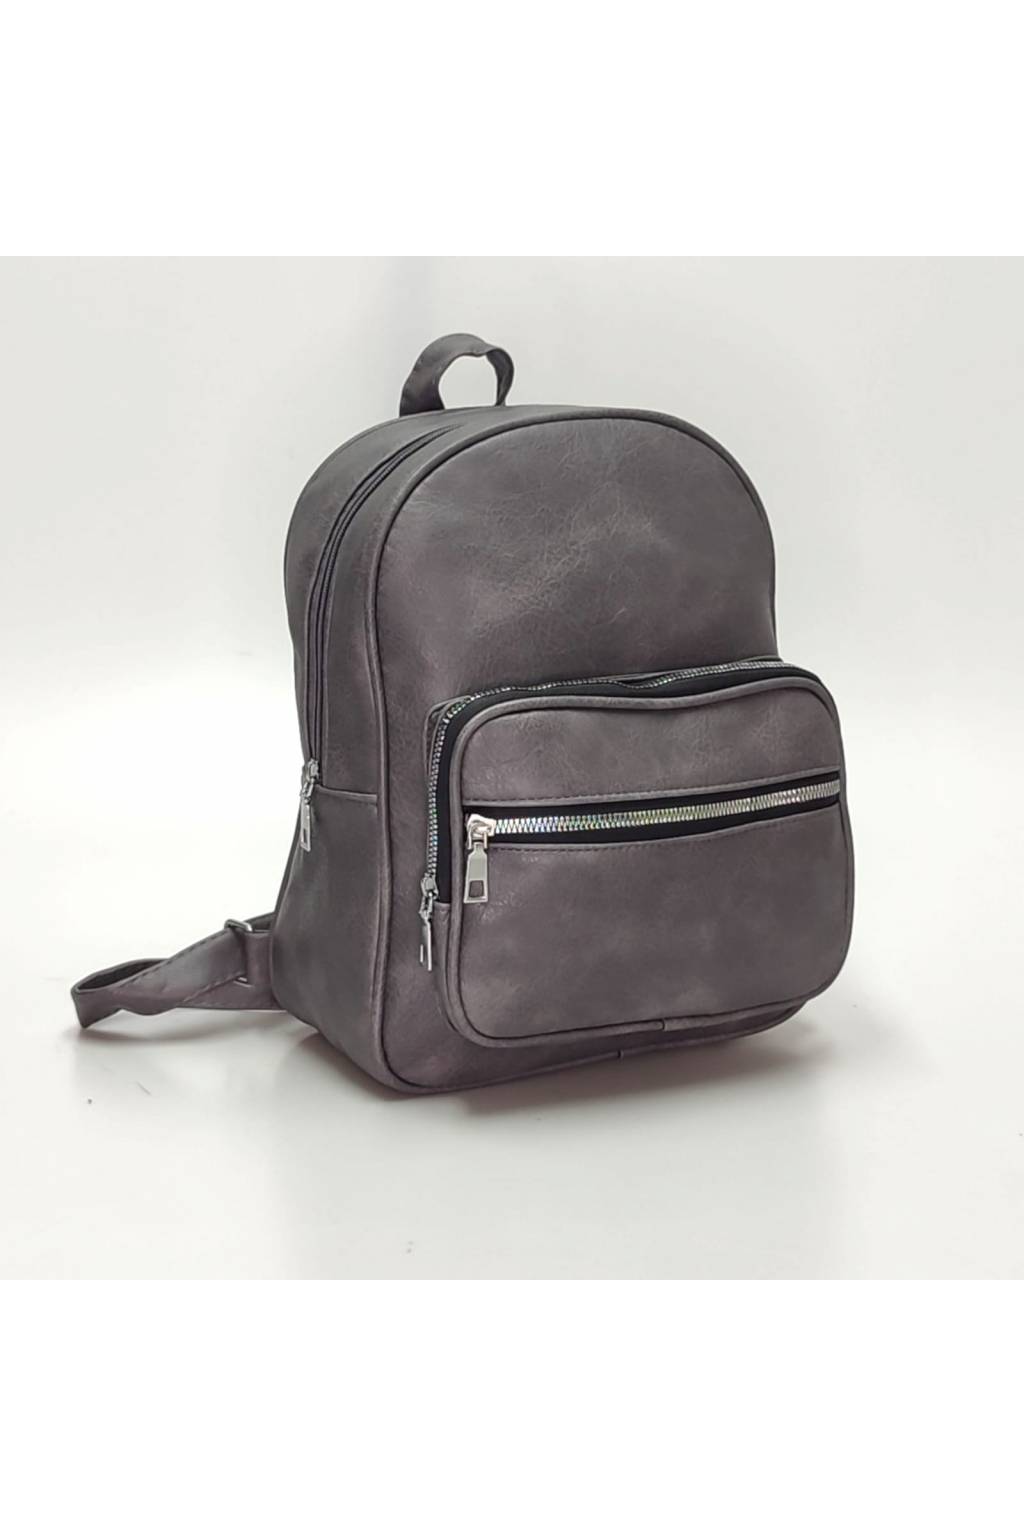 Dámsky ruksak 2144 tmavosivý www.kabelky vypredaj (16)